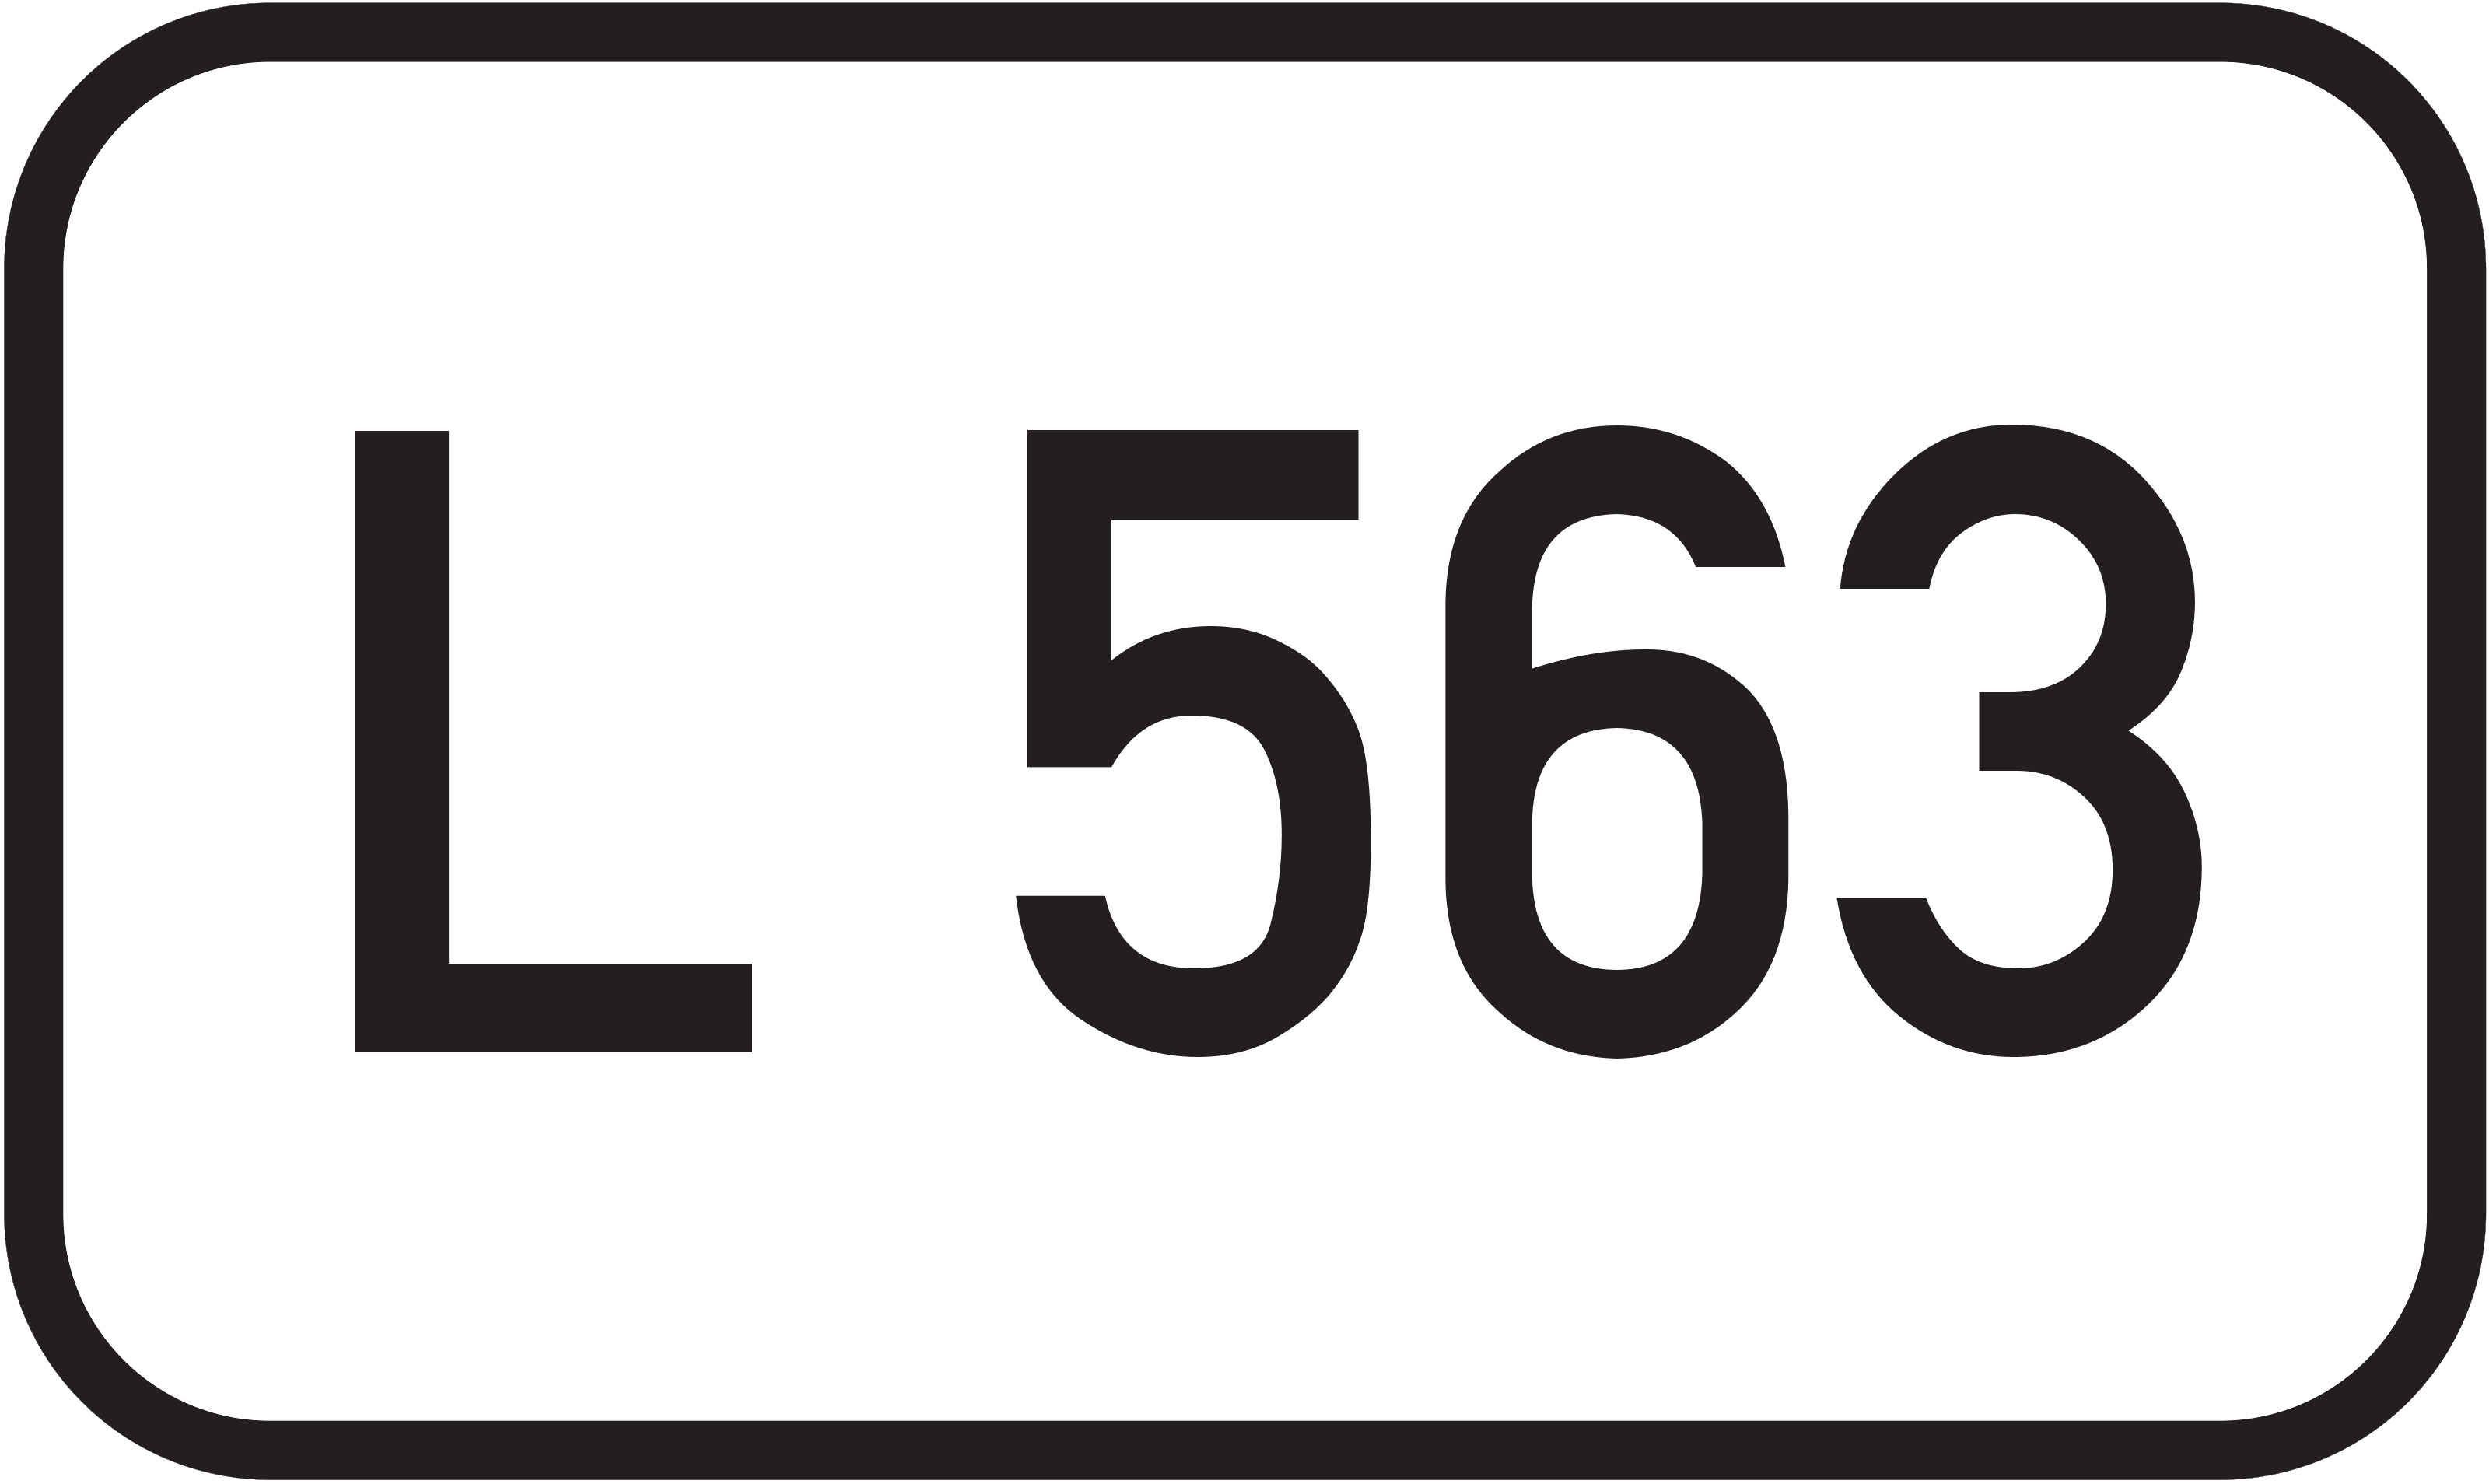 Landesstraße L 563